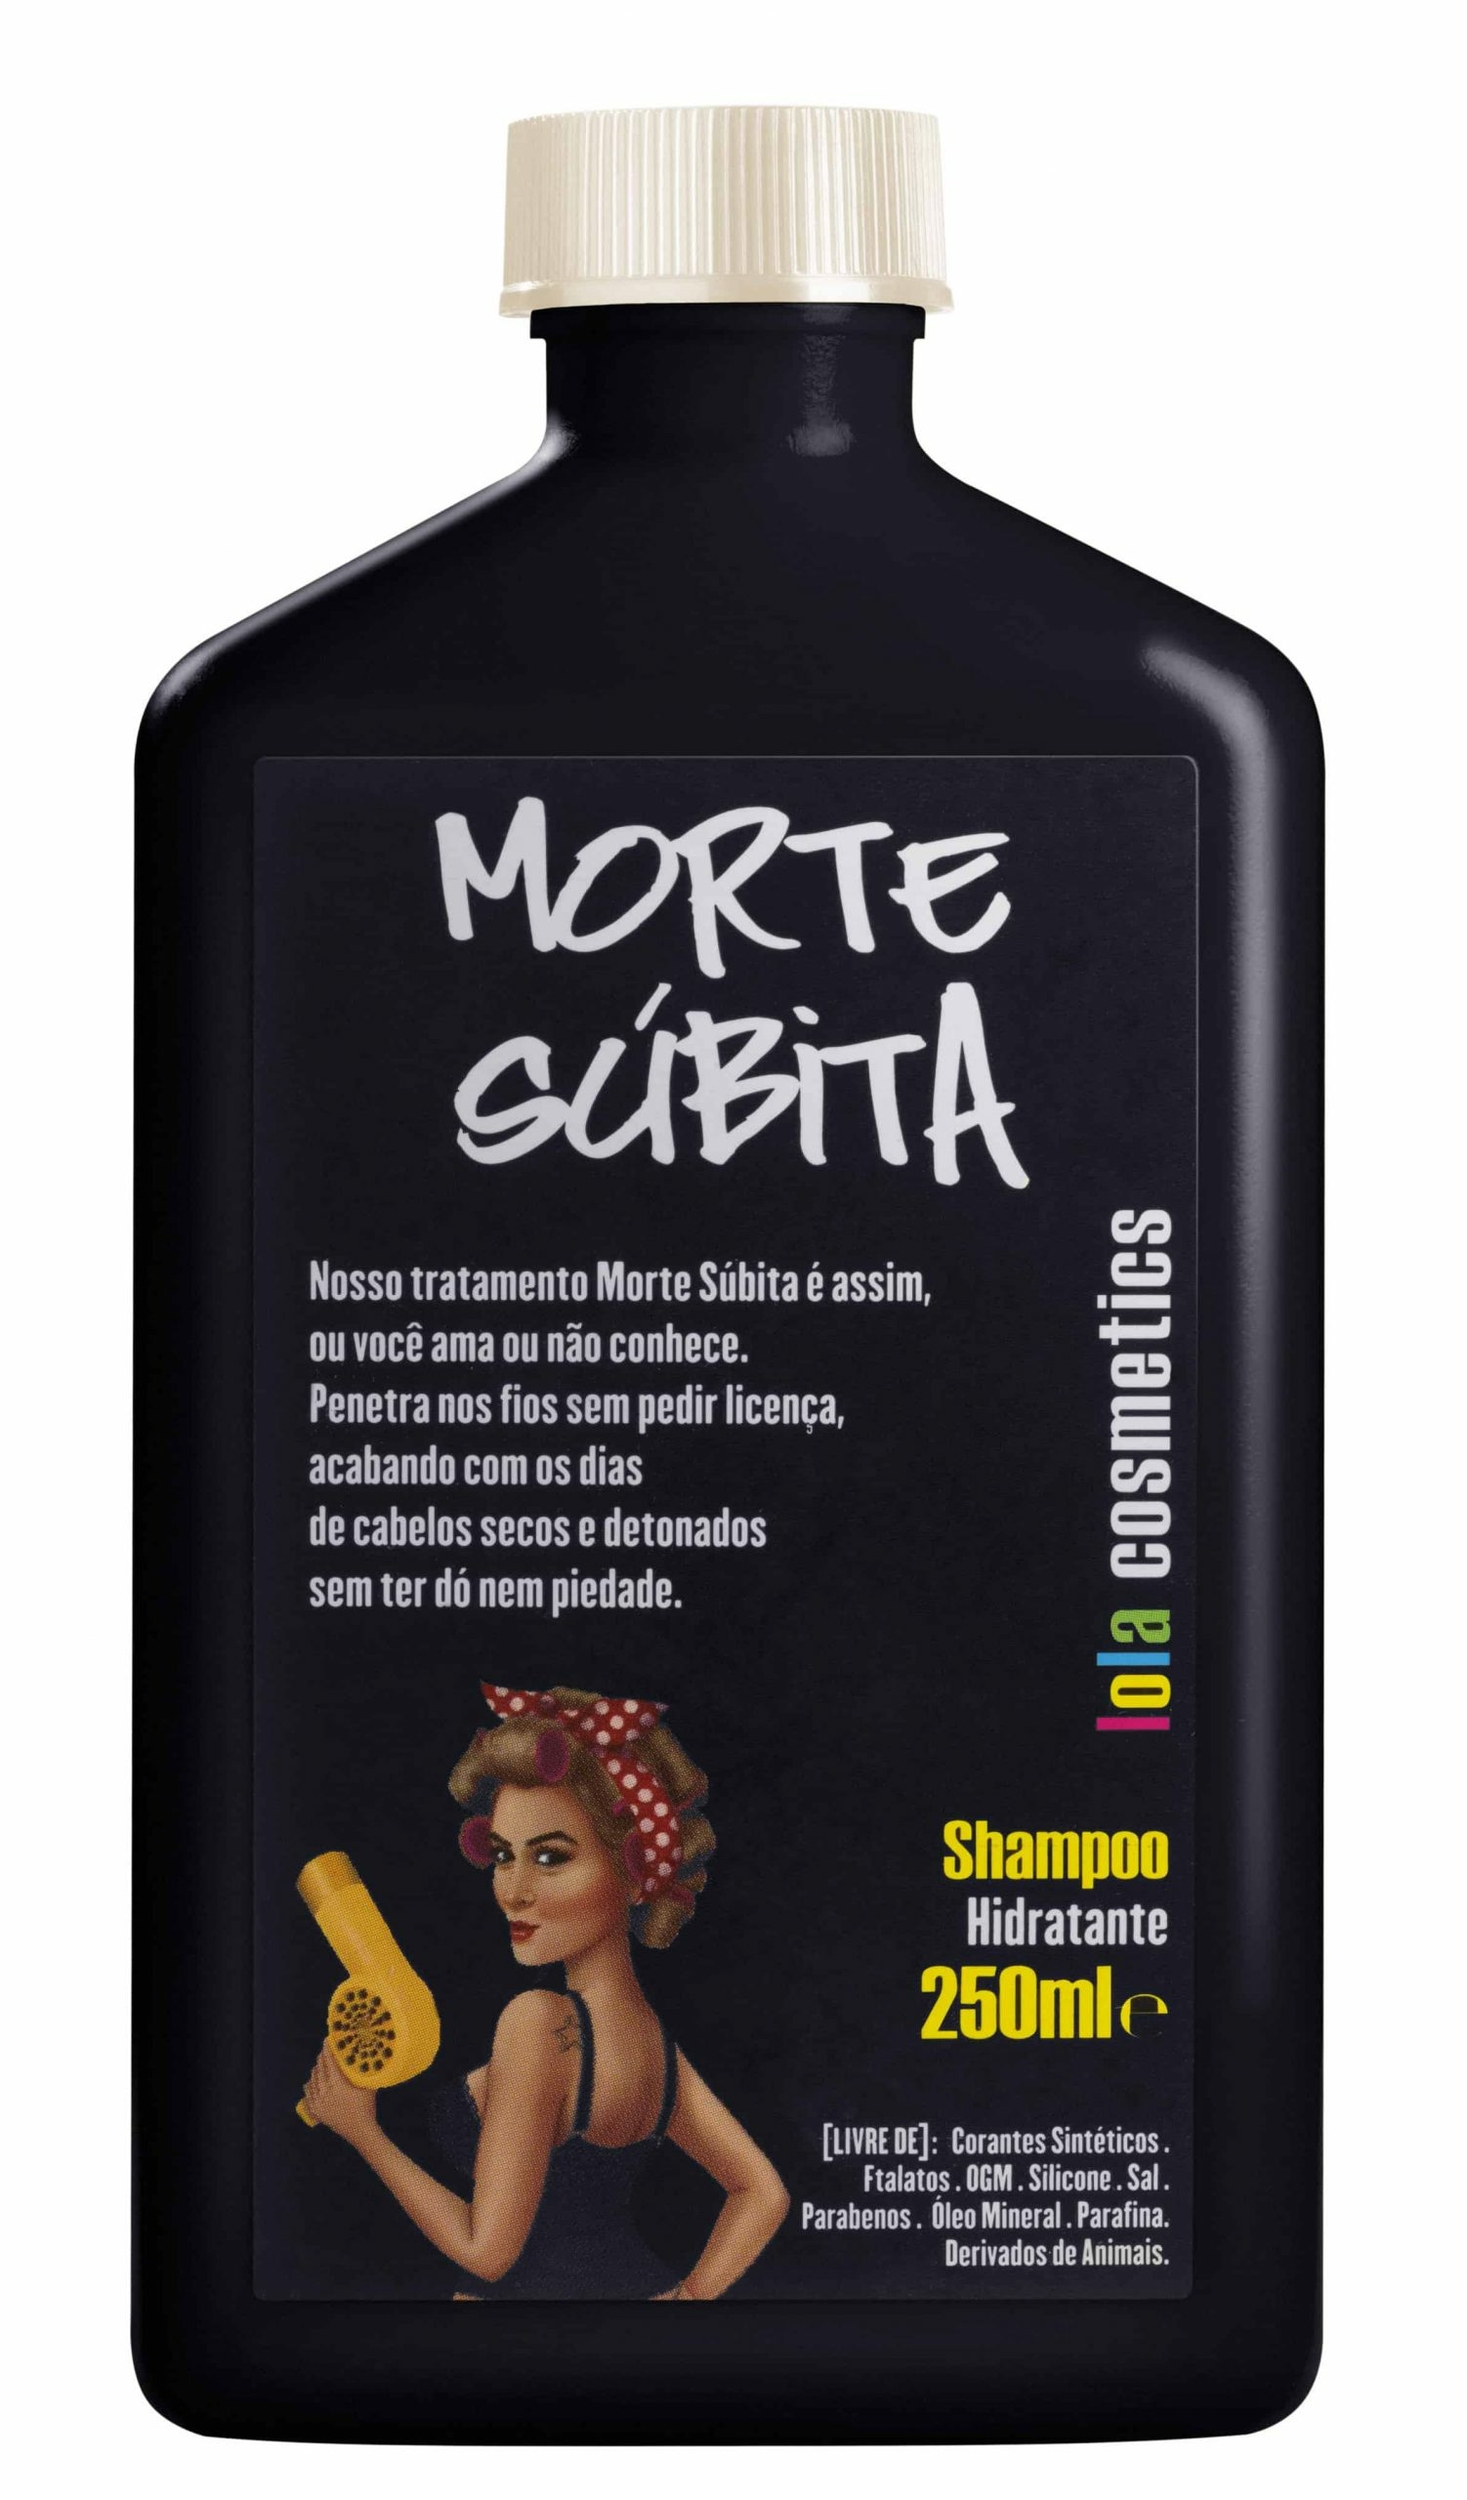 Morte-Súbita-Shampoo